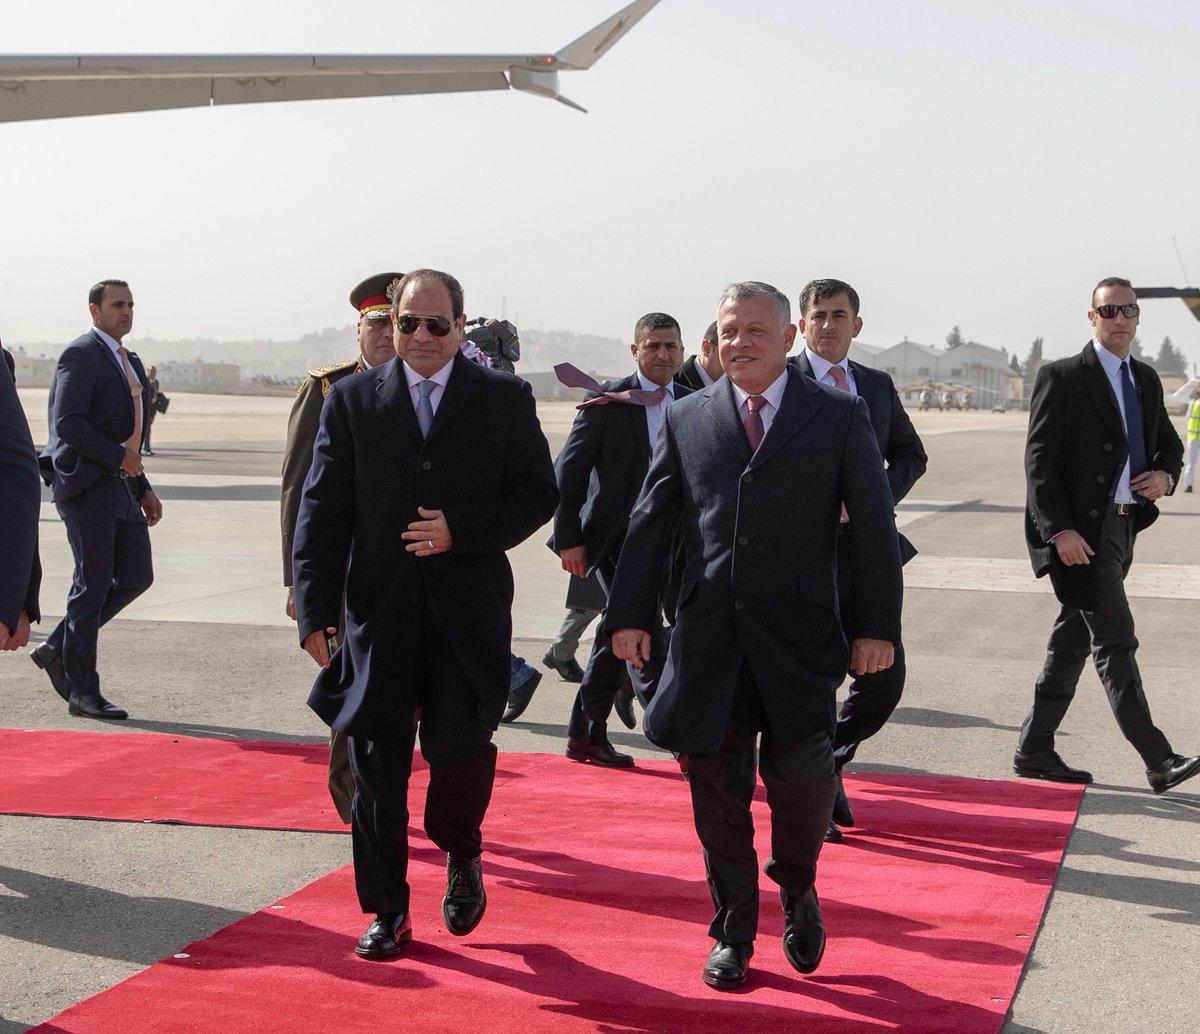 جلالة الملك عبد الله الثاني يستقبل الرئيس المصري عبد الفتاح السيسي لدى وصوله مطار ماركا العسكري، 13 يونيو 2019. (الديوان الملكي الهاشمي)